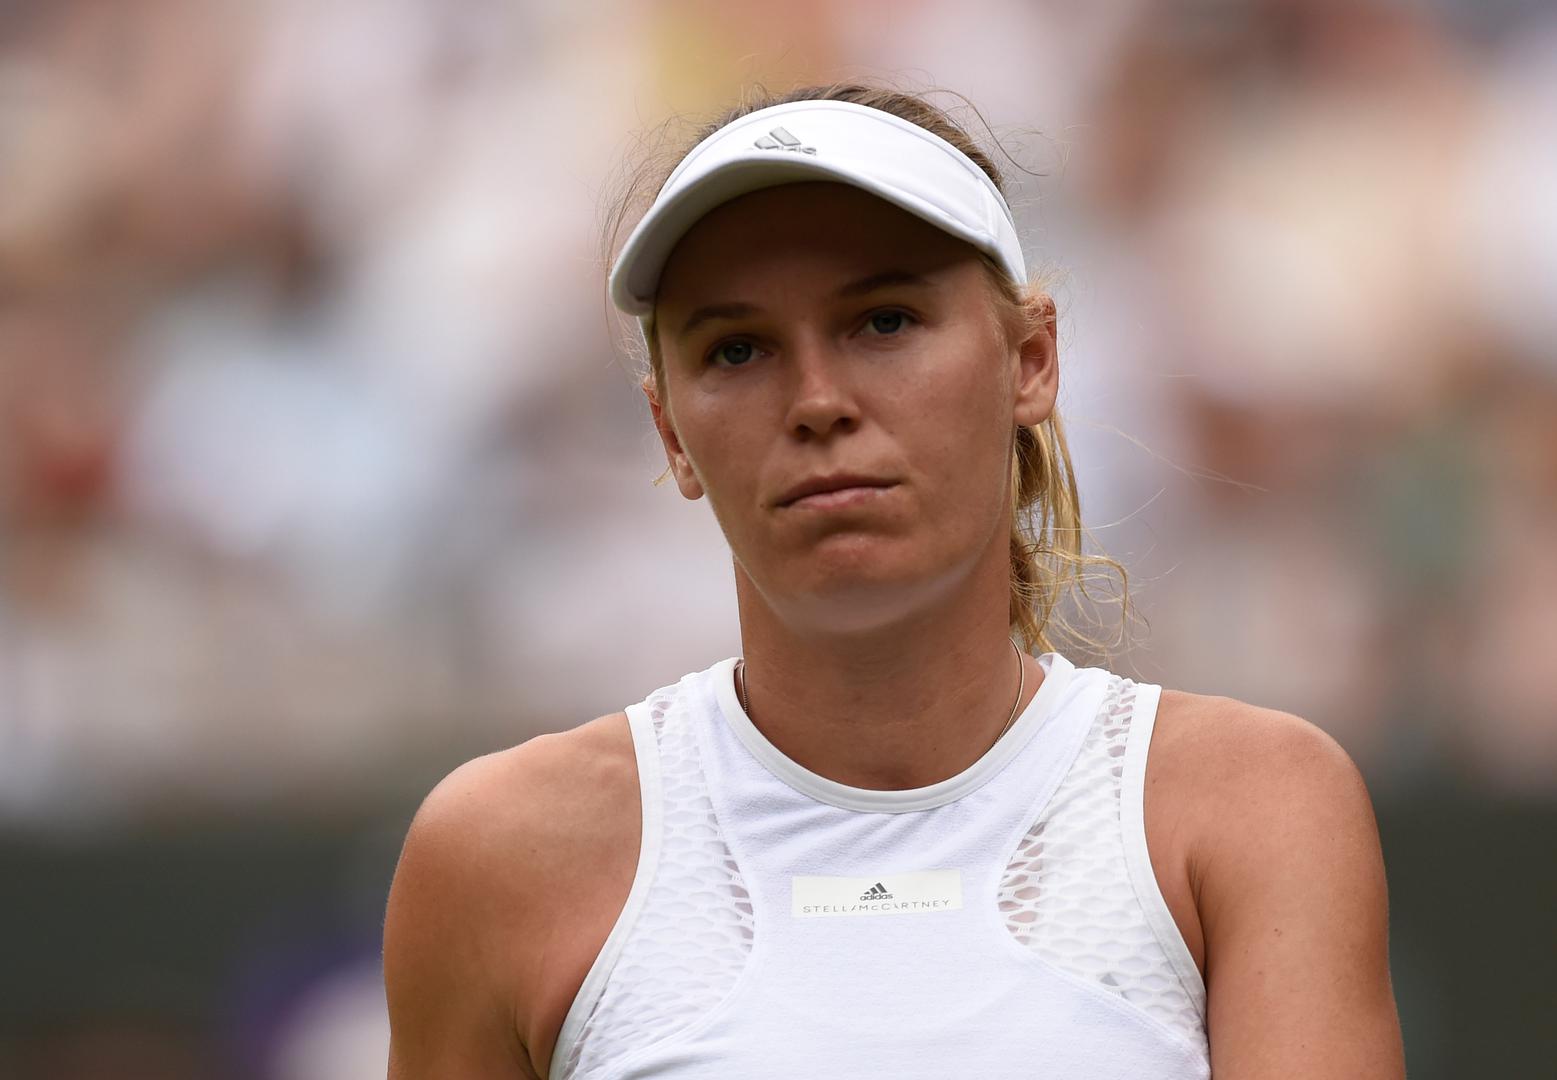 Od Wimbledona se danas oprostila druga nositeljica Caroline Wozniacki.

